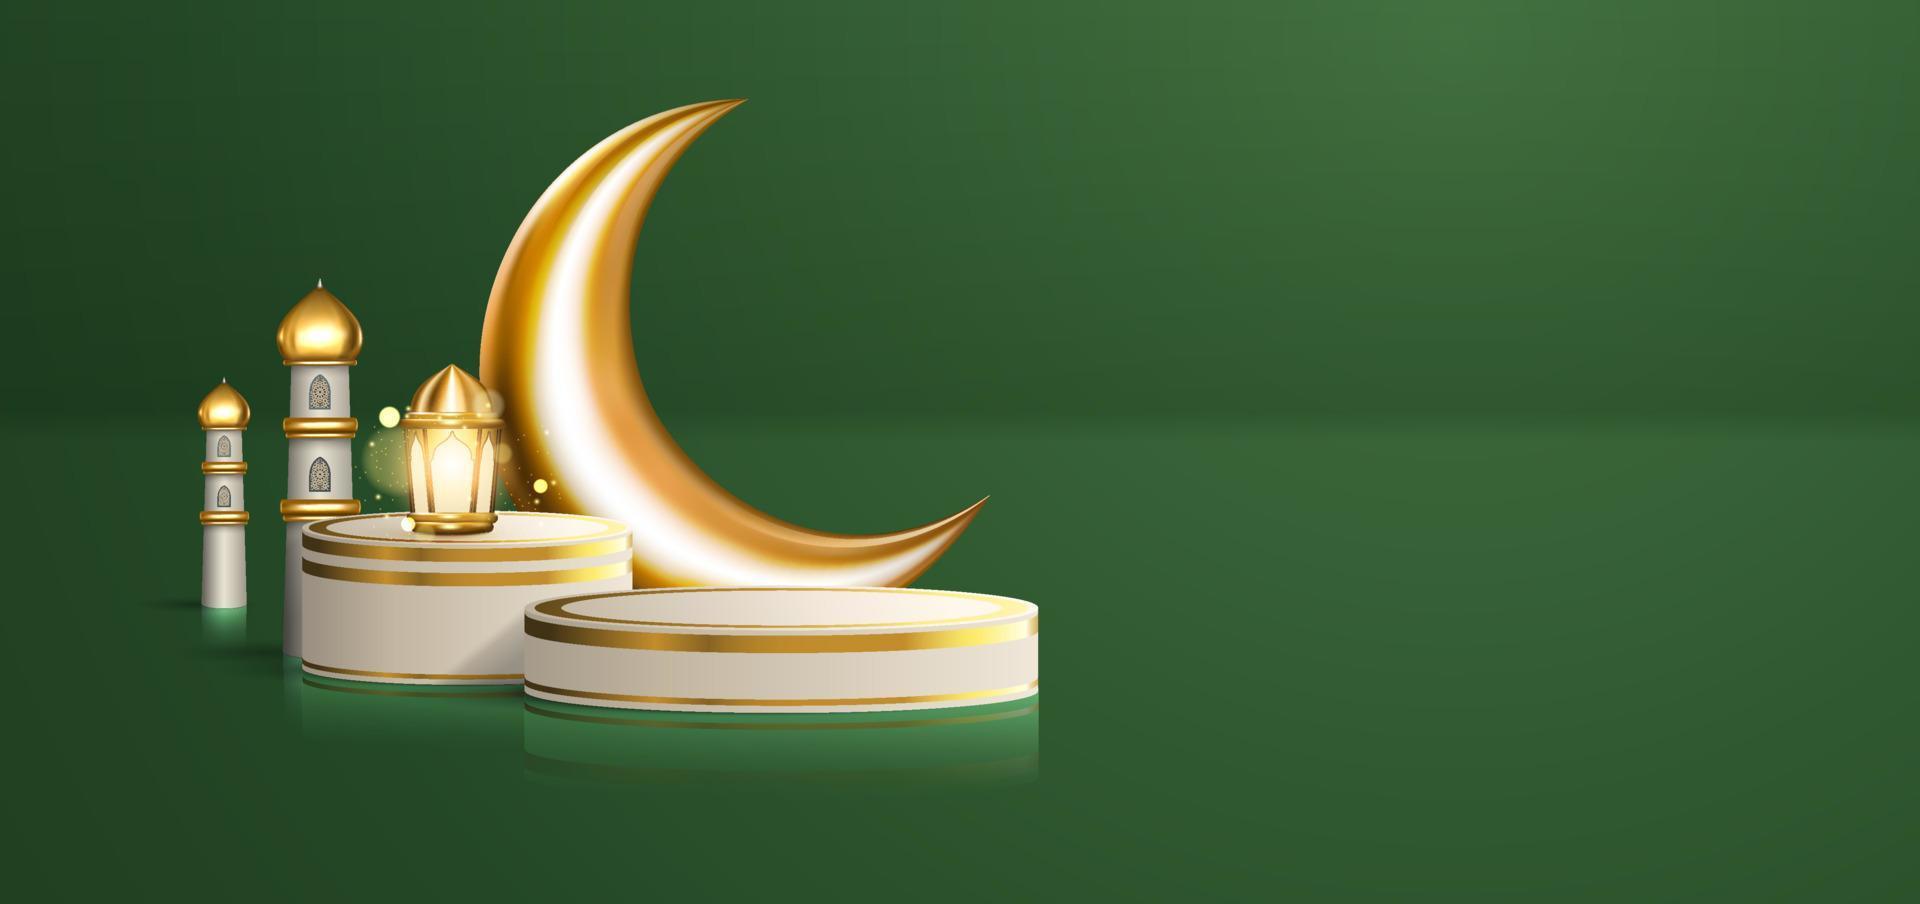 realistische 3d islamitische viering met arabisch ornament en productpodium op groene achtergrond. ramadan kareem illustratie voor reclame, verkoop, online winkelen en marketing vector